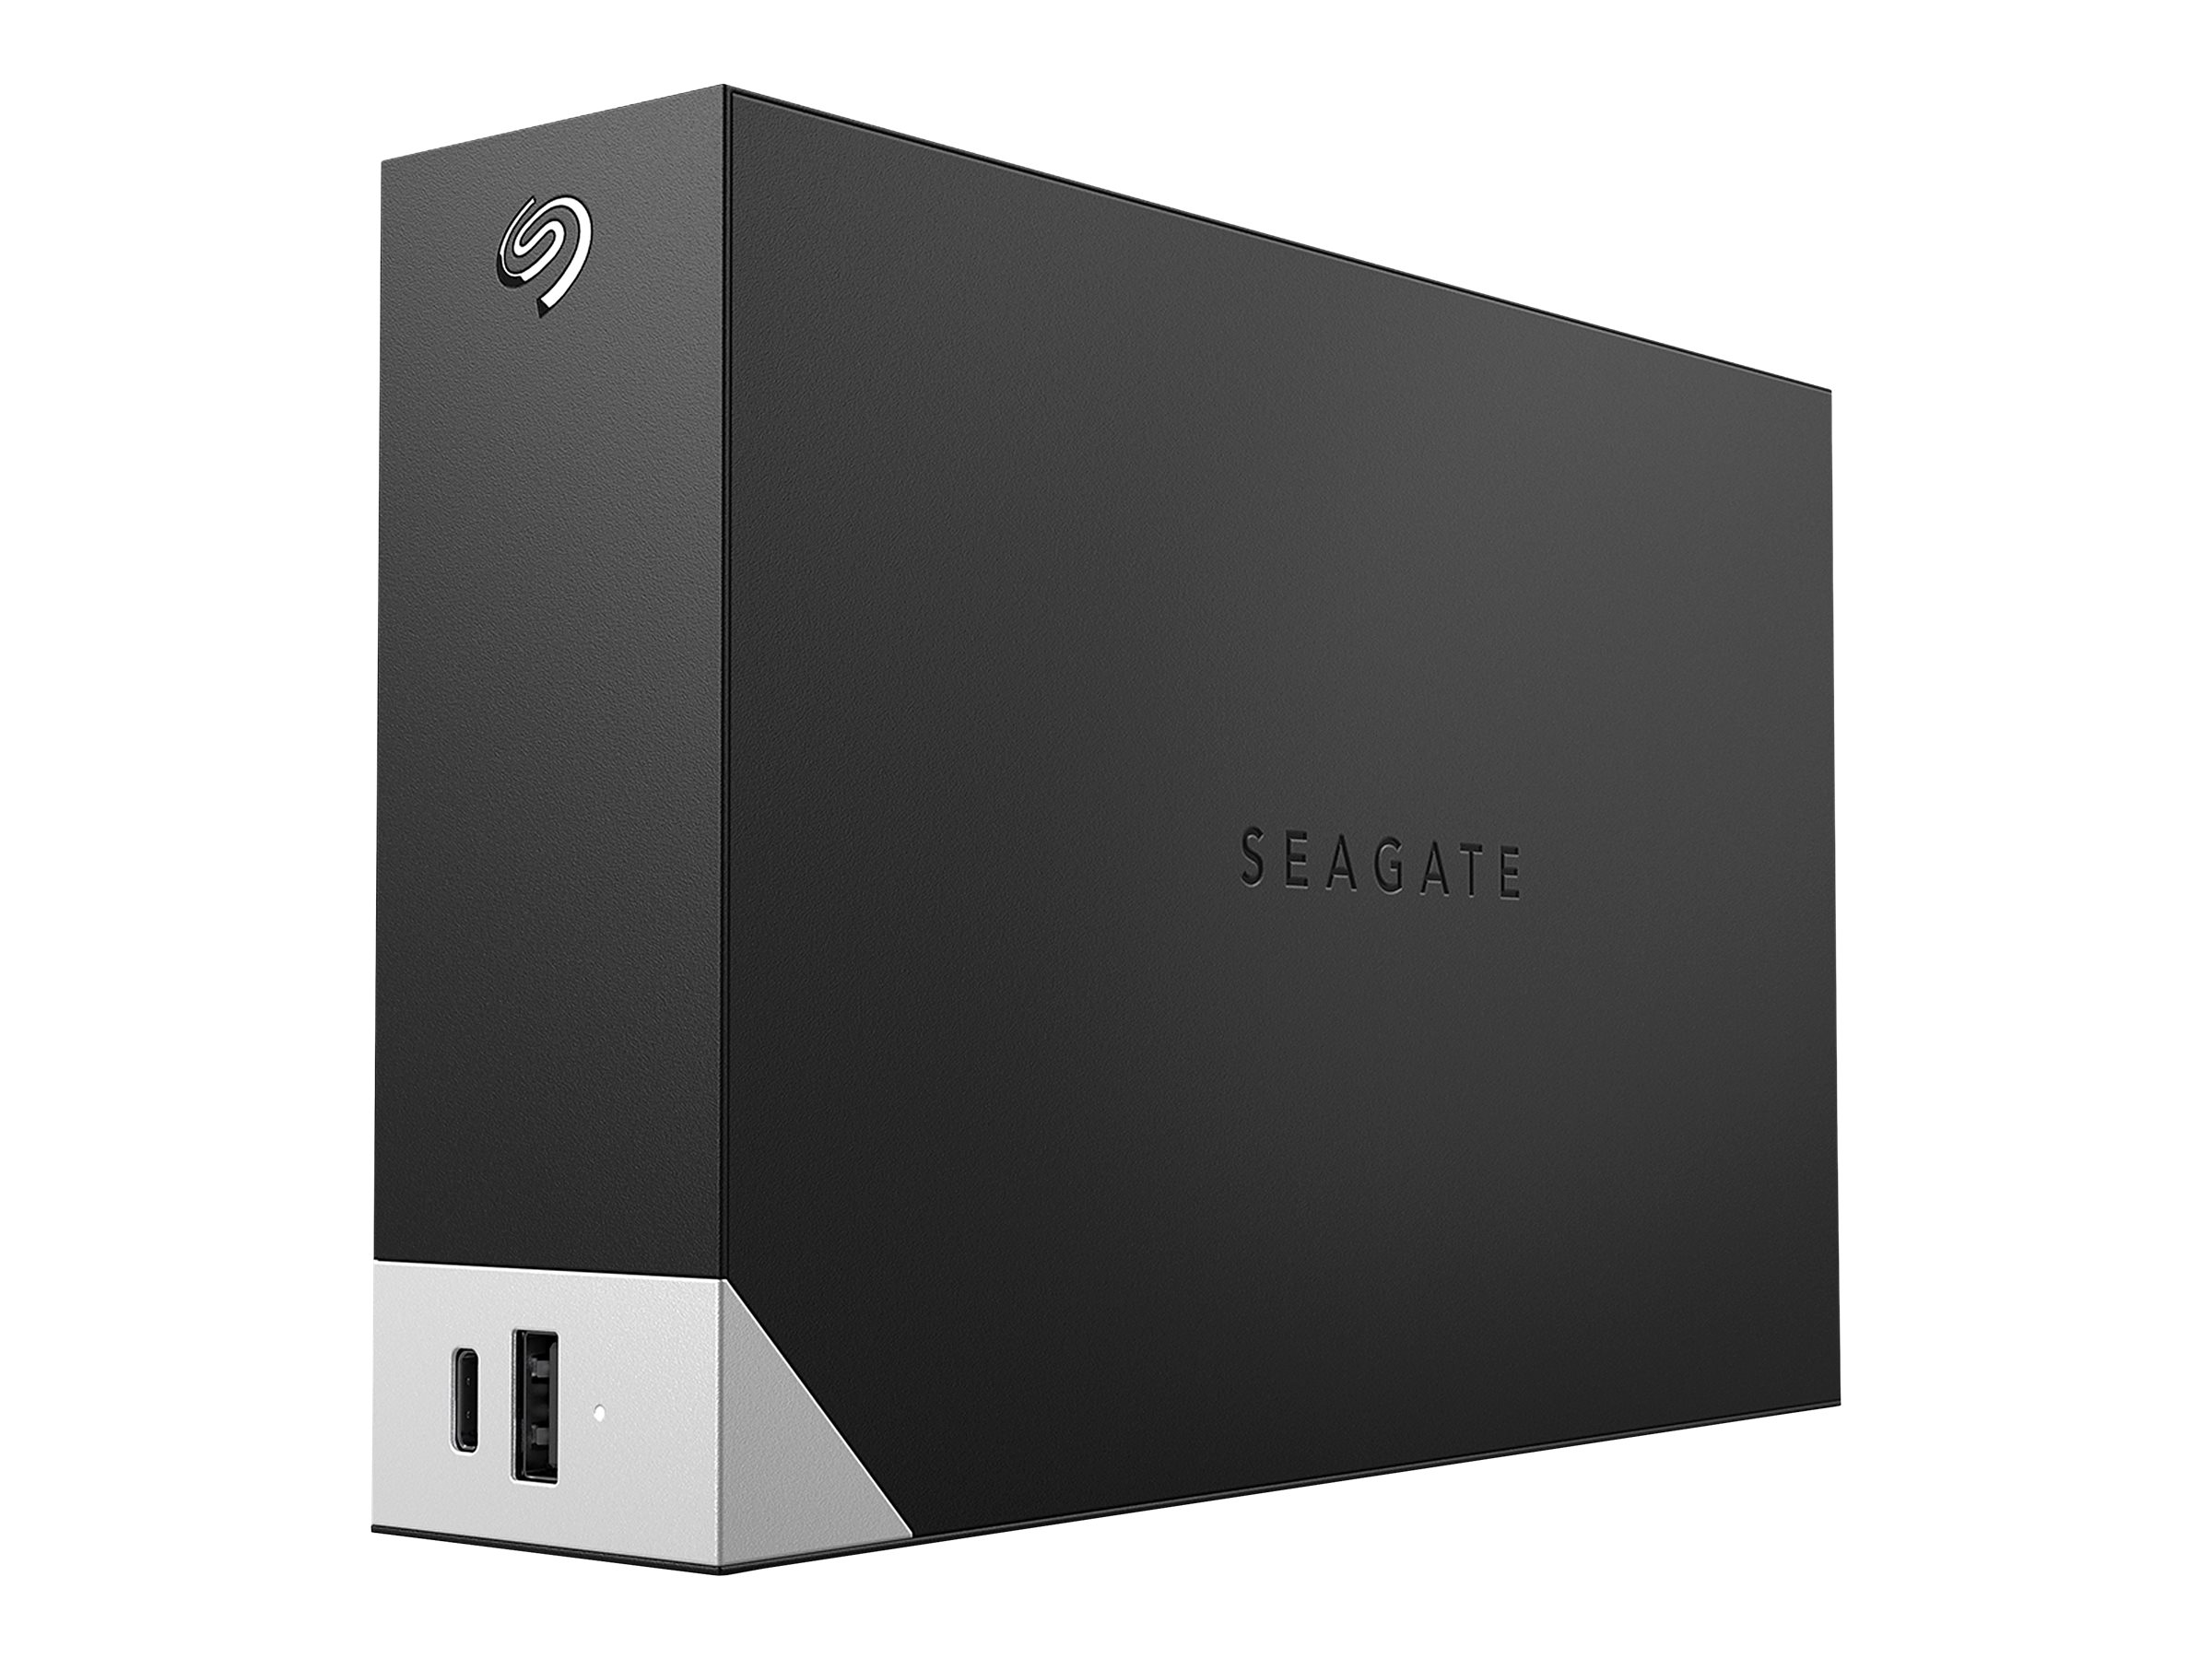 Seagate One Touch with hub STLC12000400 - Disque dur - 12 To - externe (de bureau) - USB 3.0 - noir - avec Seagate Rescue Data Recovery - STLC12000400 - Disques durs externes